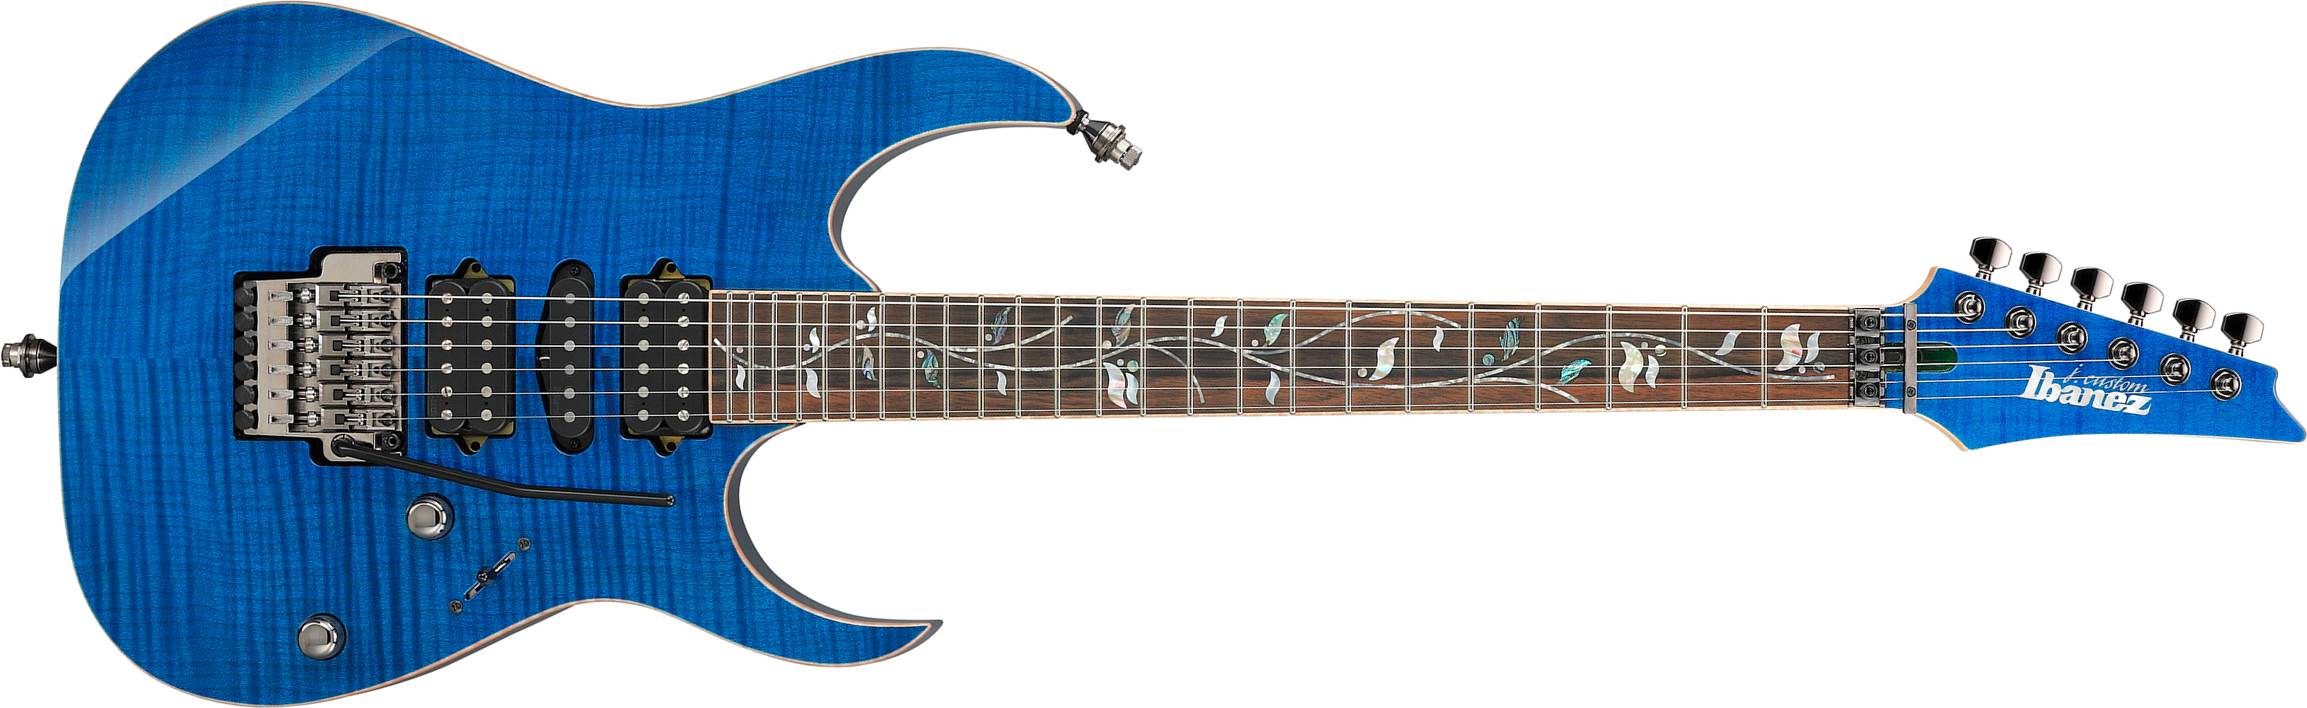 Ibanez Rg8570 Bre J.custom Jap Hsh Dimarzio Fr Eb - Royal Blue Sapphire - Guitarra eléctrica con forma de str. - Main picture